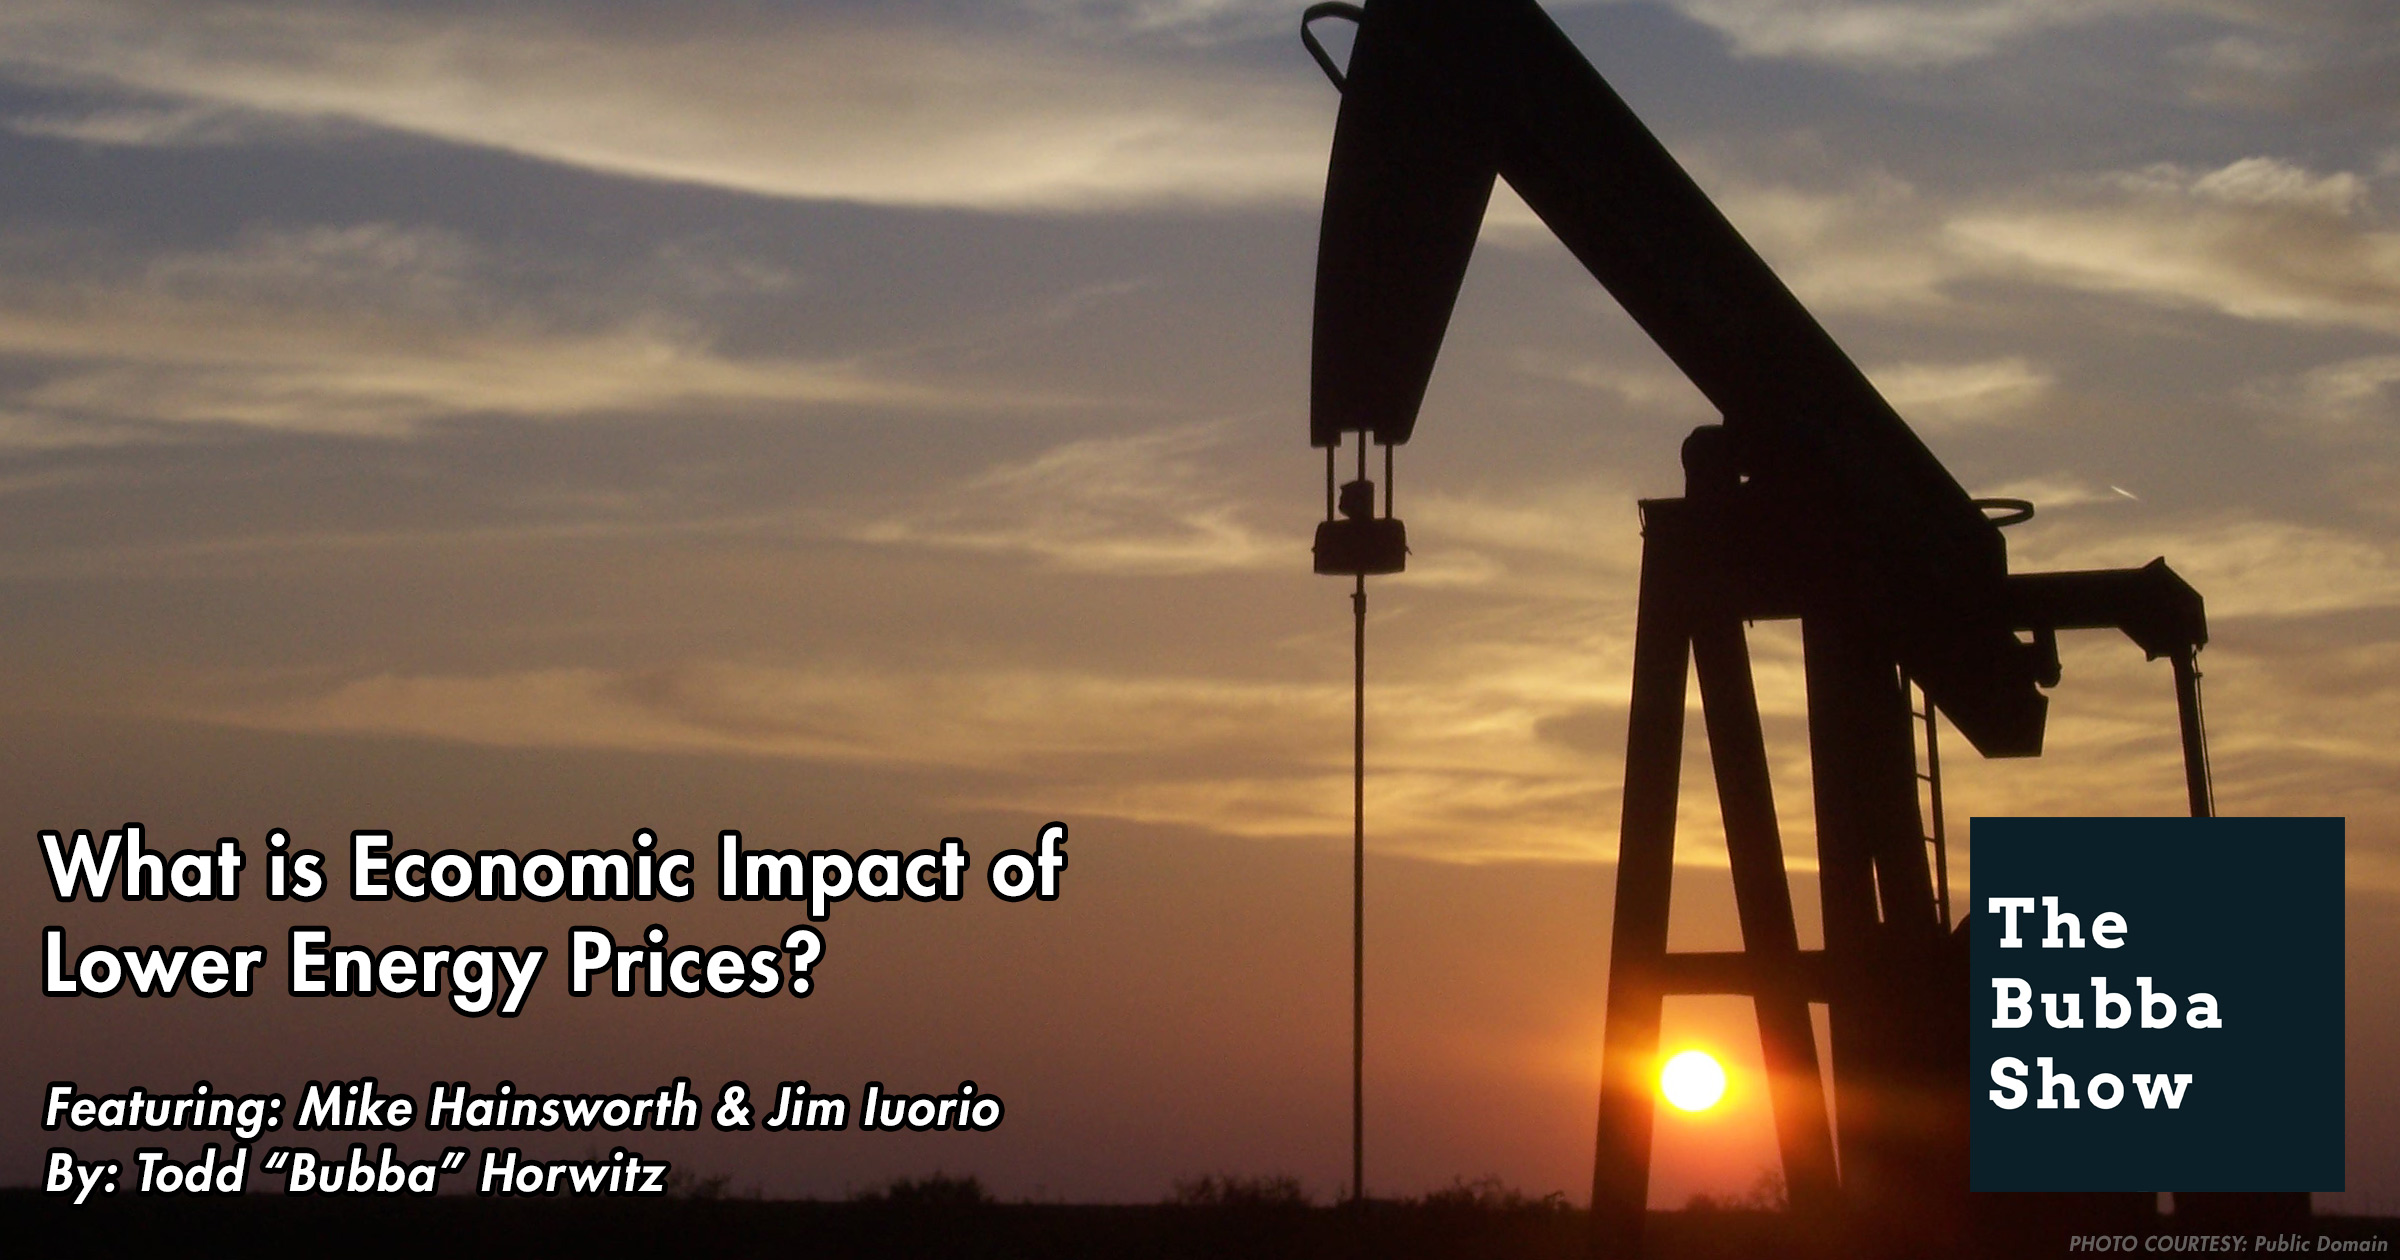 Economic Impact of Lower Energy Prices